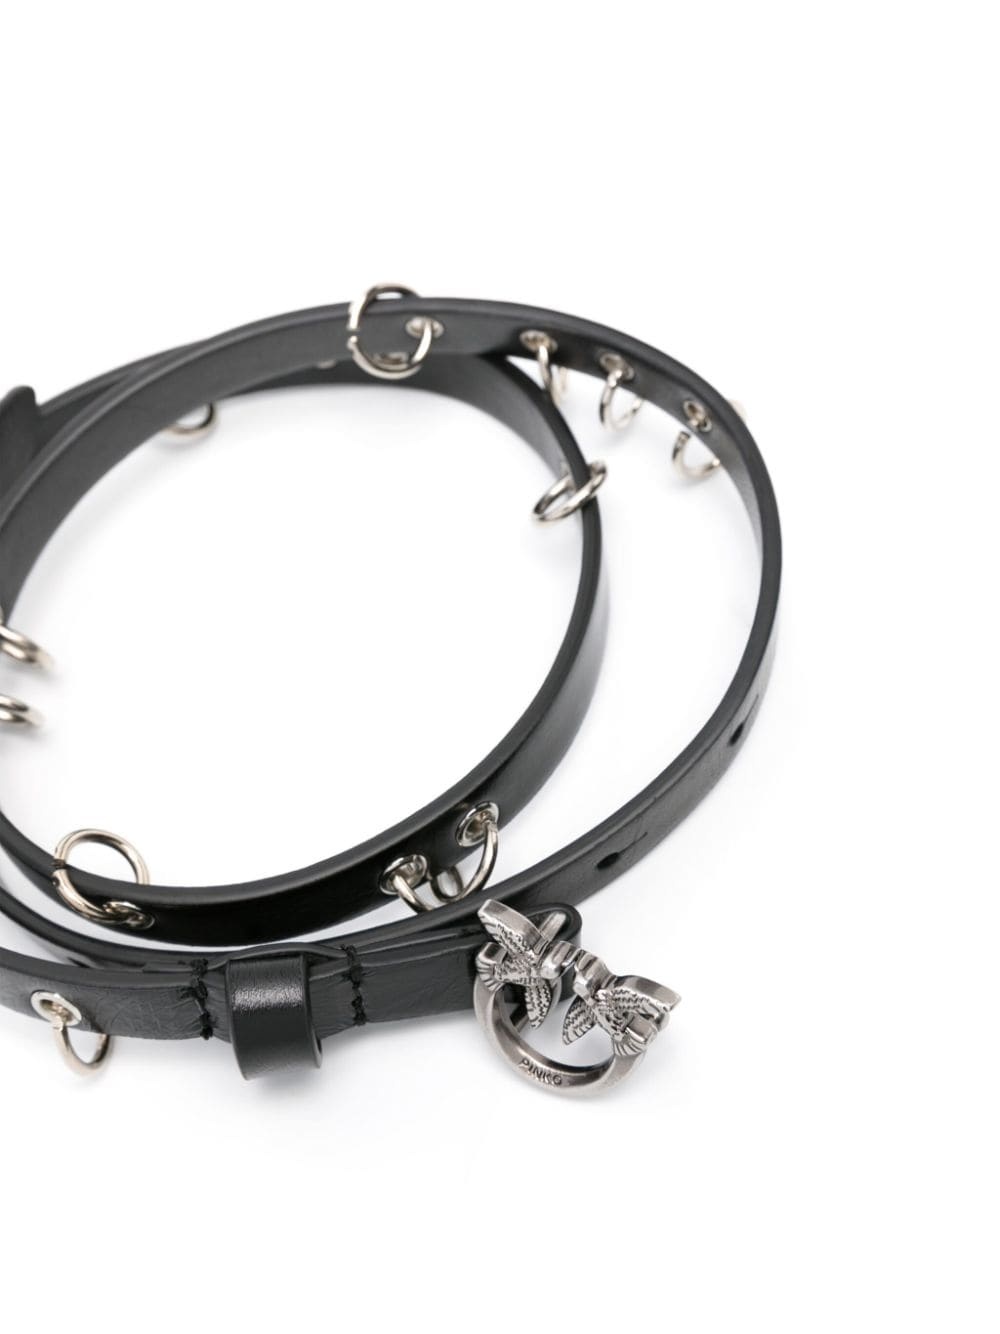 ring-detailing leather belt - 2